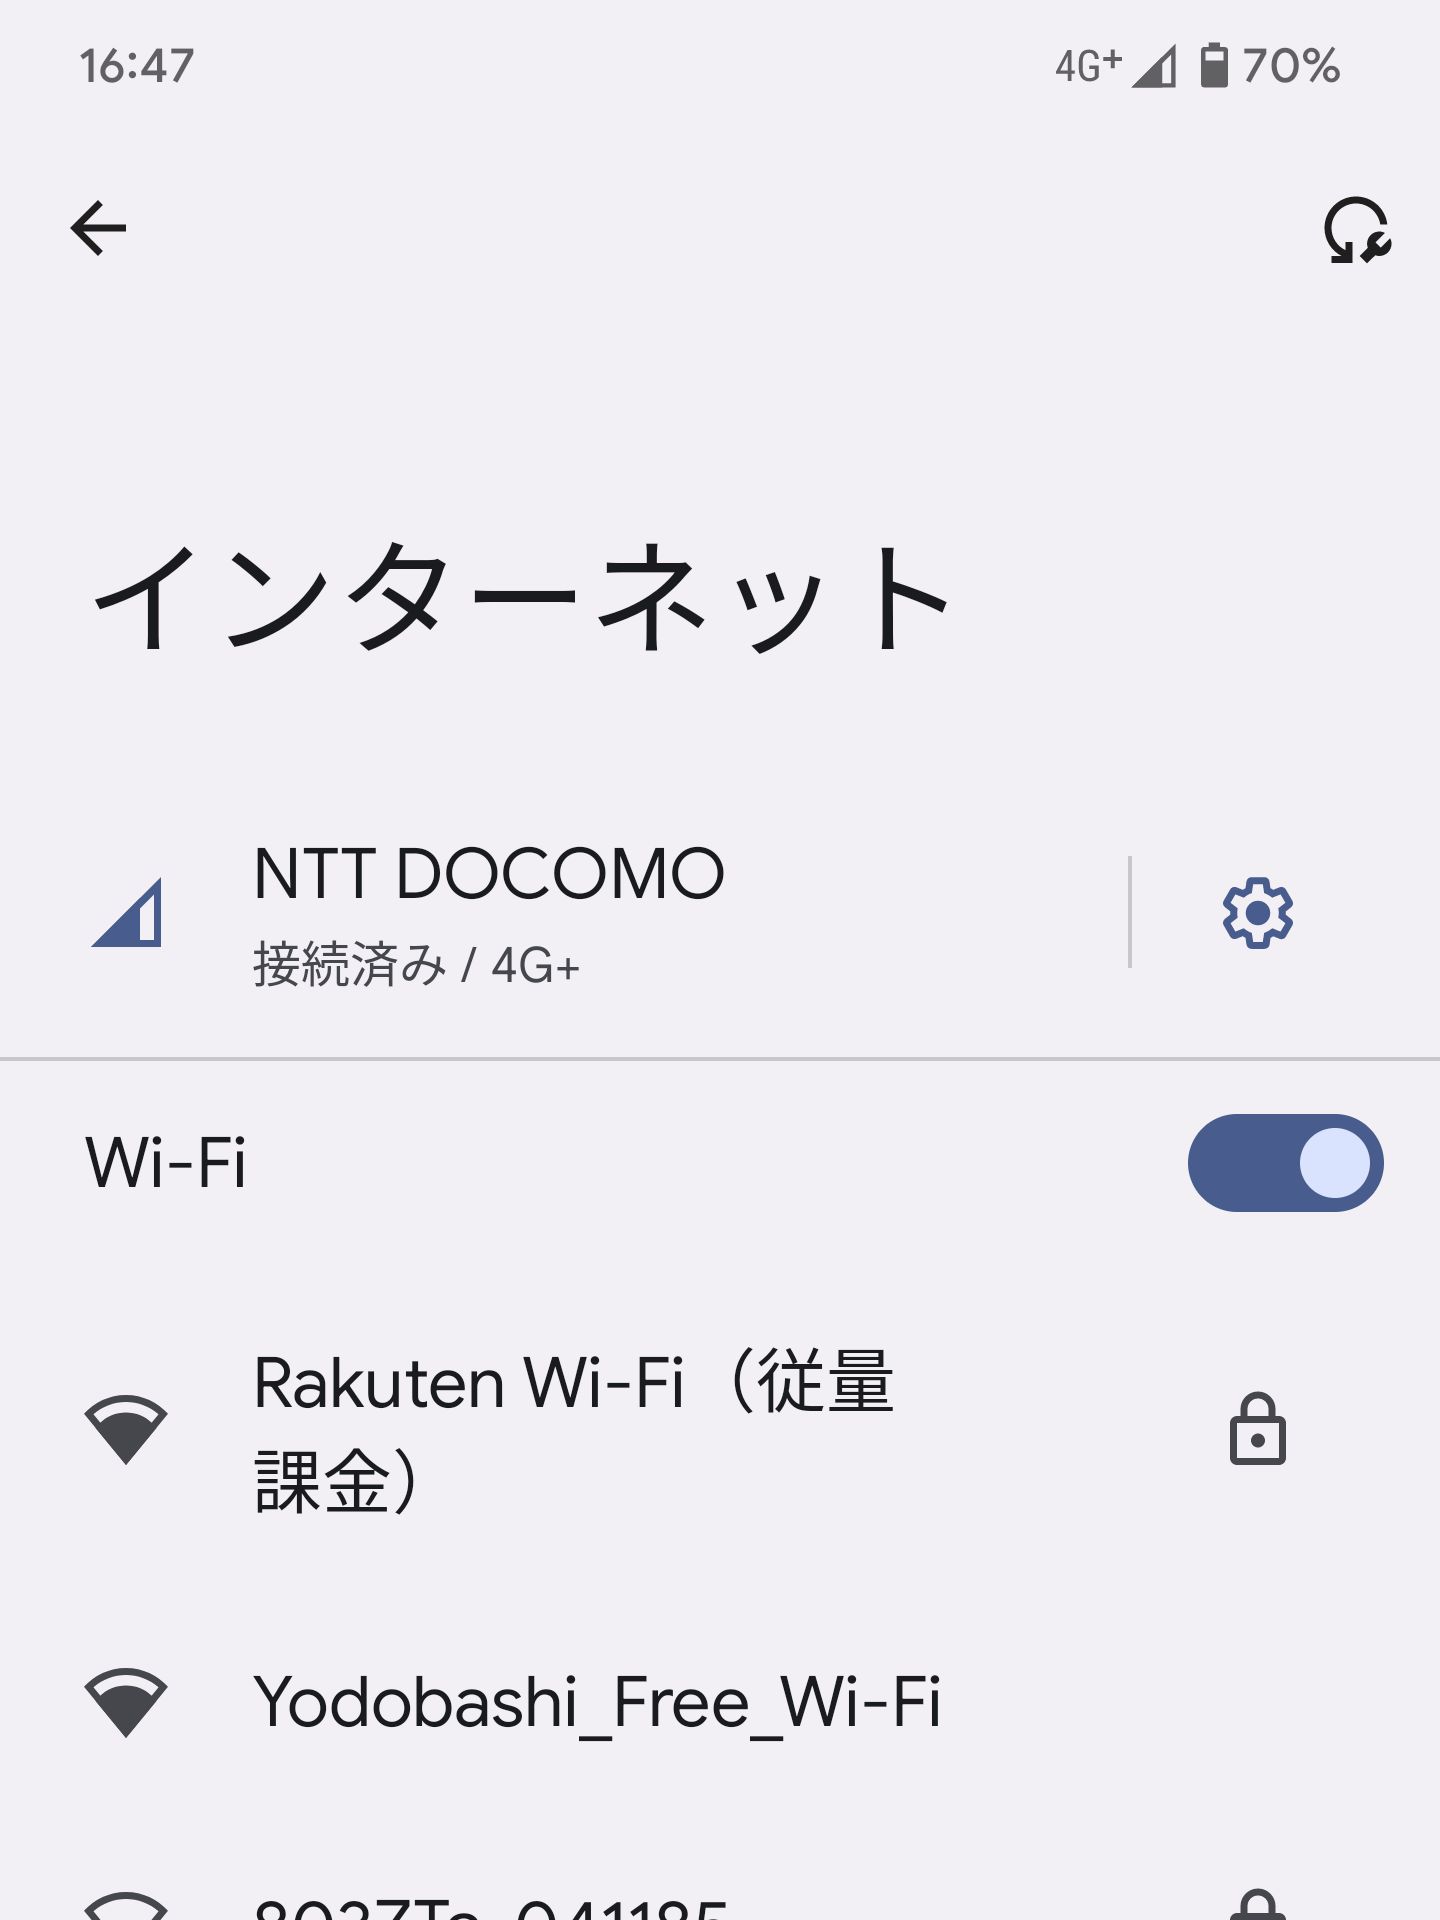 Rakuten Wi-Fi（従量課金）